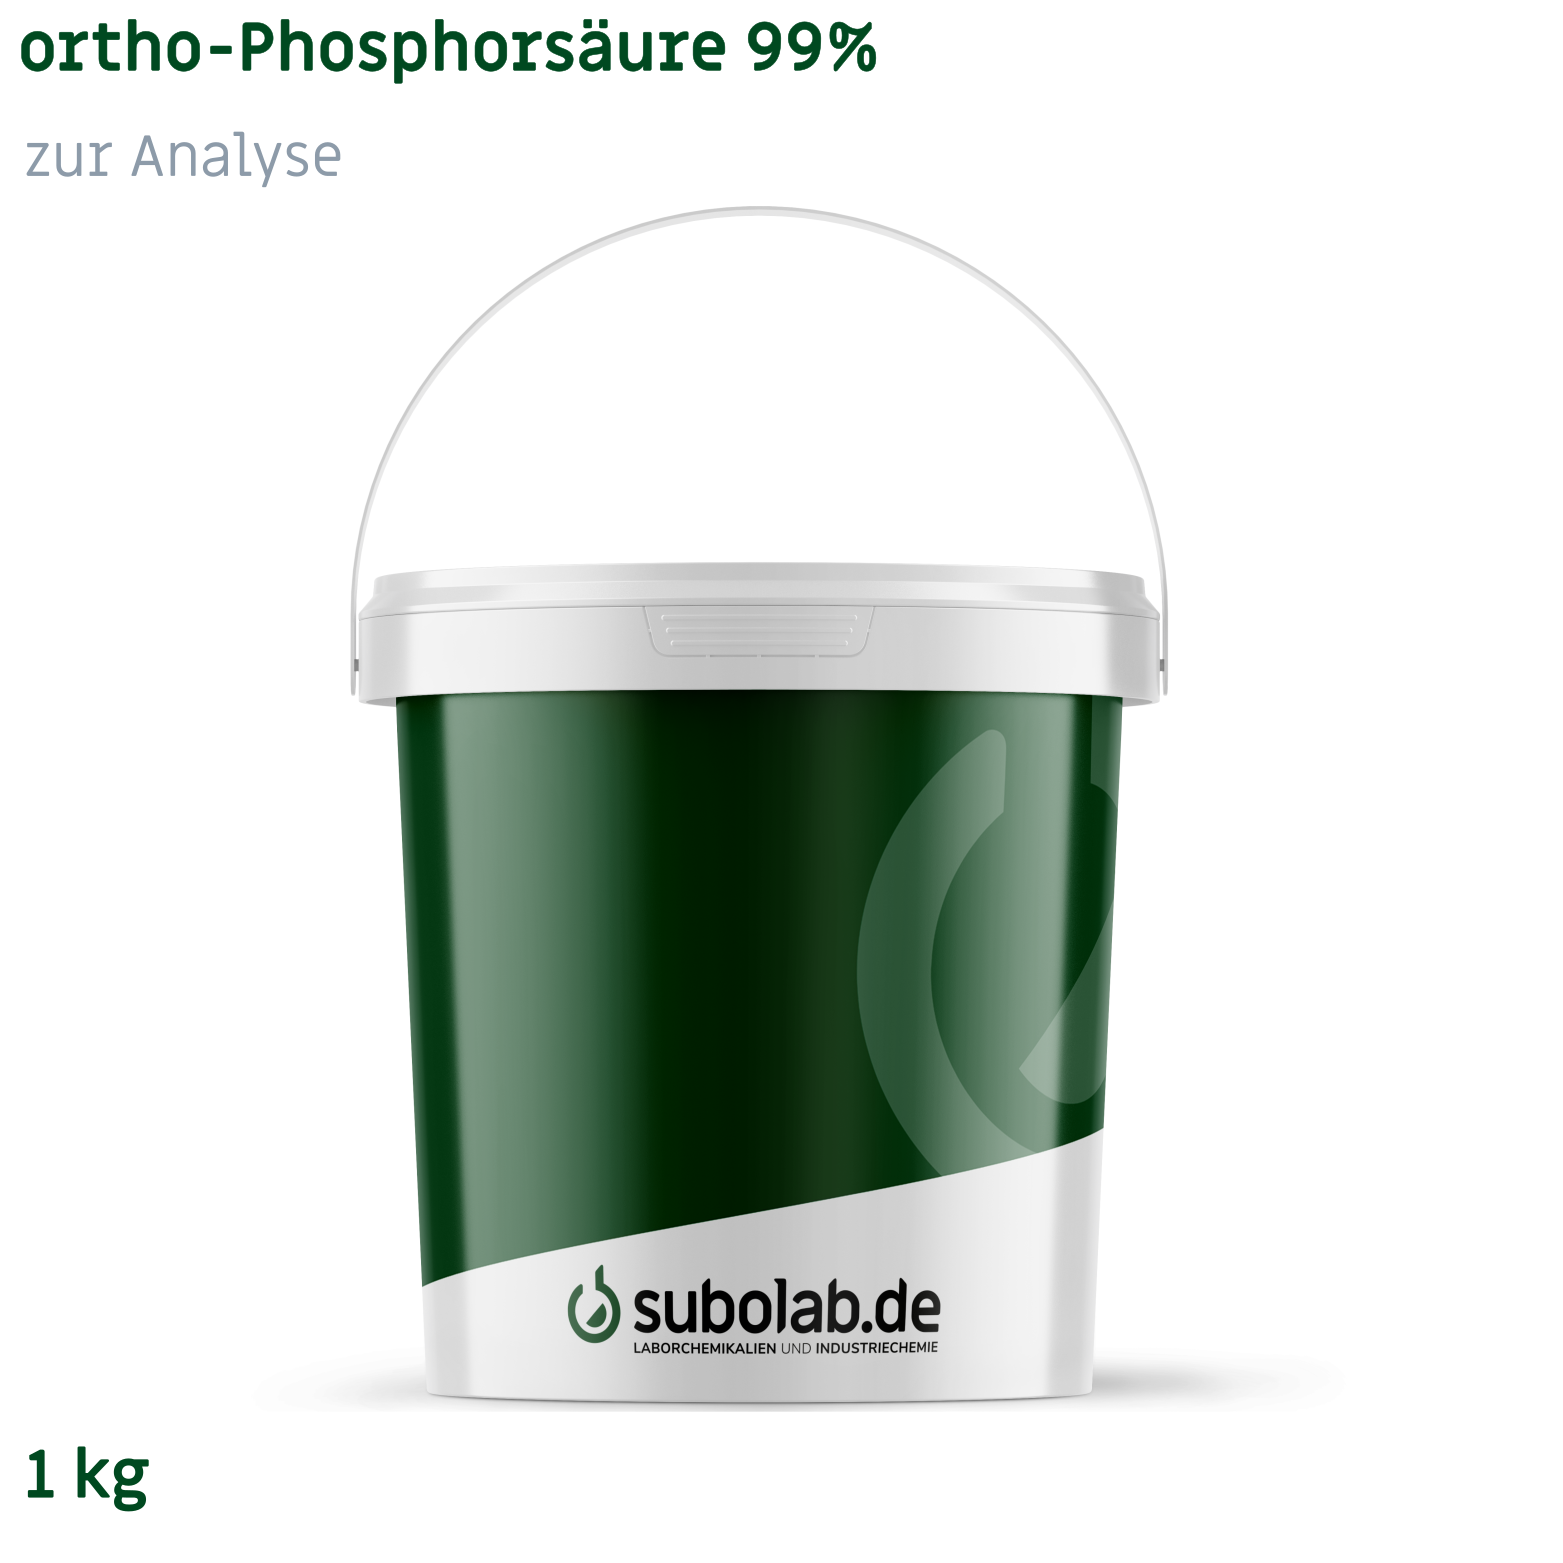 Bild von ortho-Phosphorsäure 99% zur Analyse (1 kg)